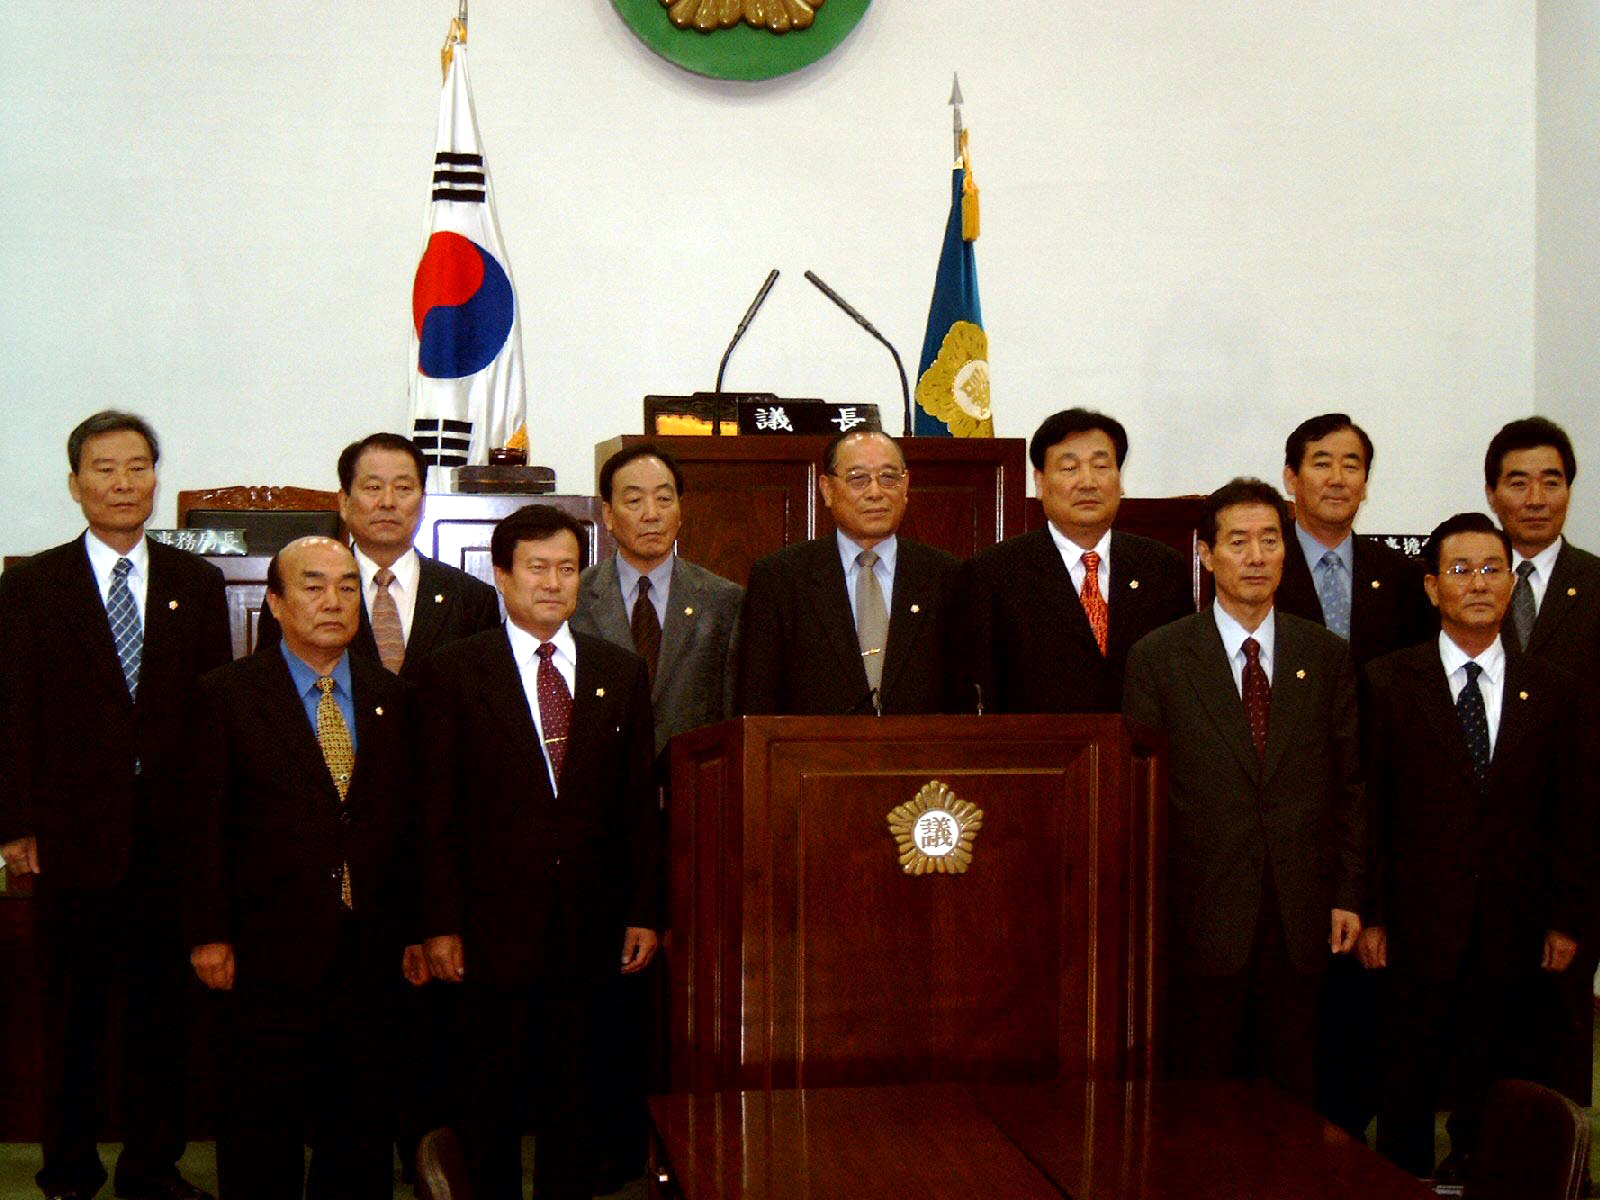 구·군의회 의장협의회 월례회 기념사진 ▷ 2003.11.20(의회 본회의장)